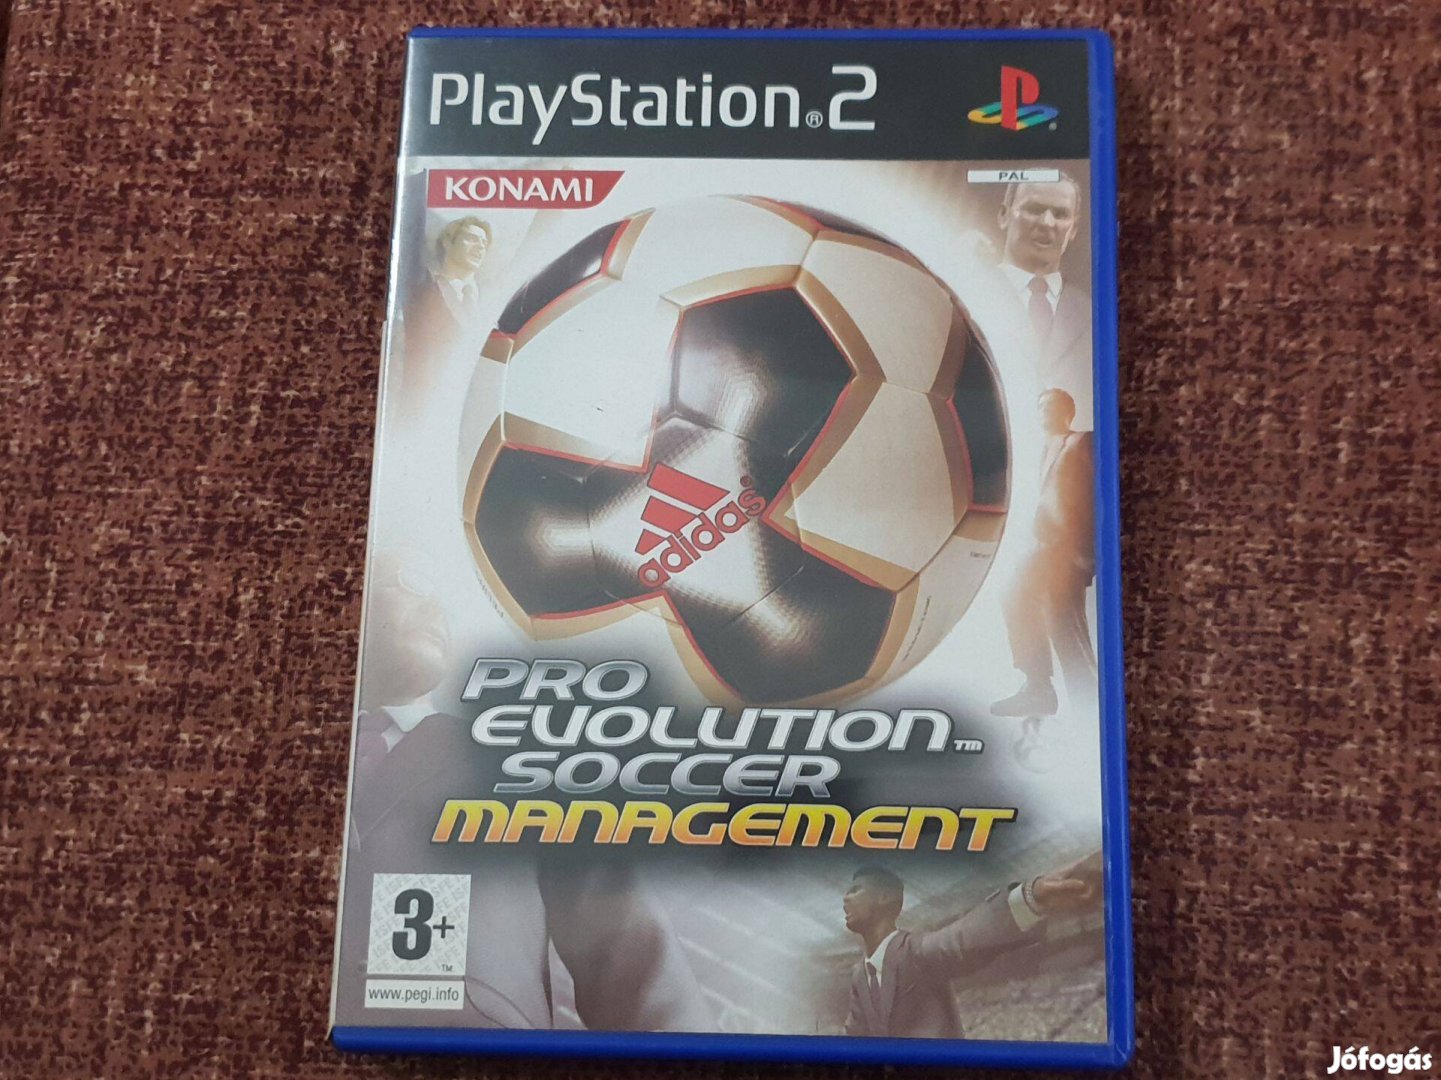 Pro Evolution Soccer Management Playstation 2 eredeti lemez ( 2000 Ft)